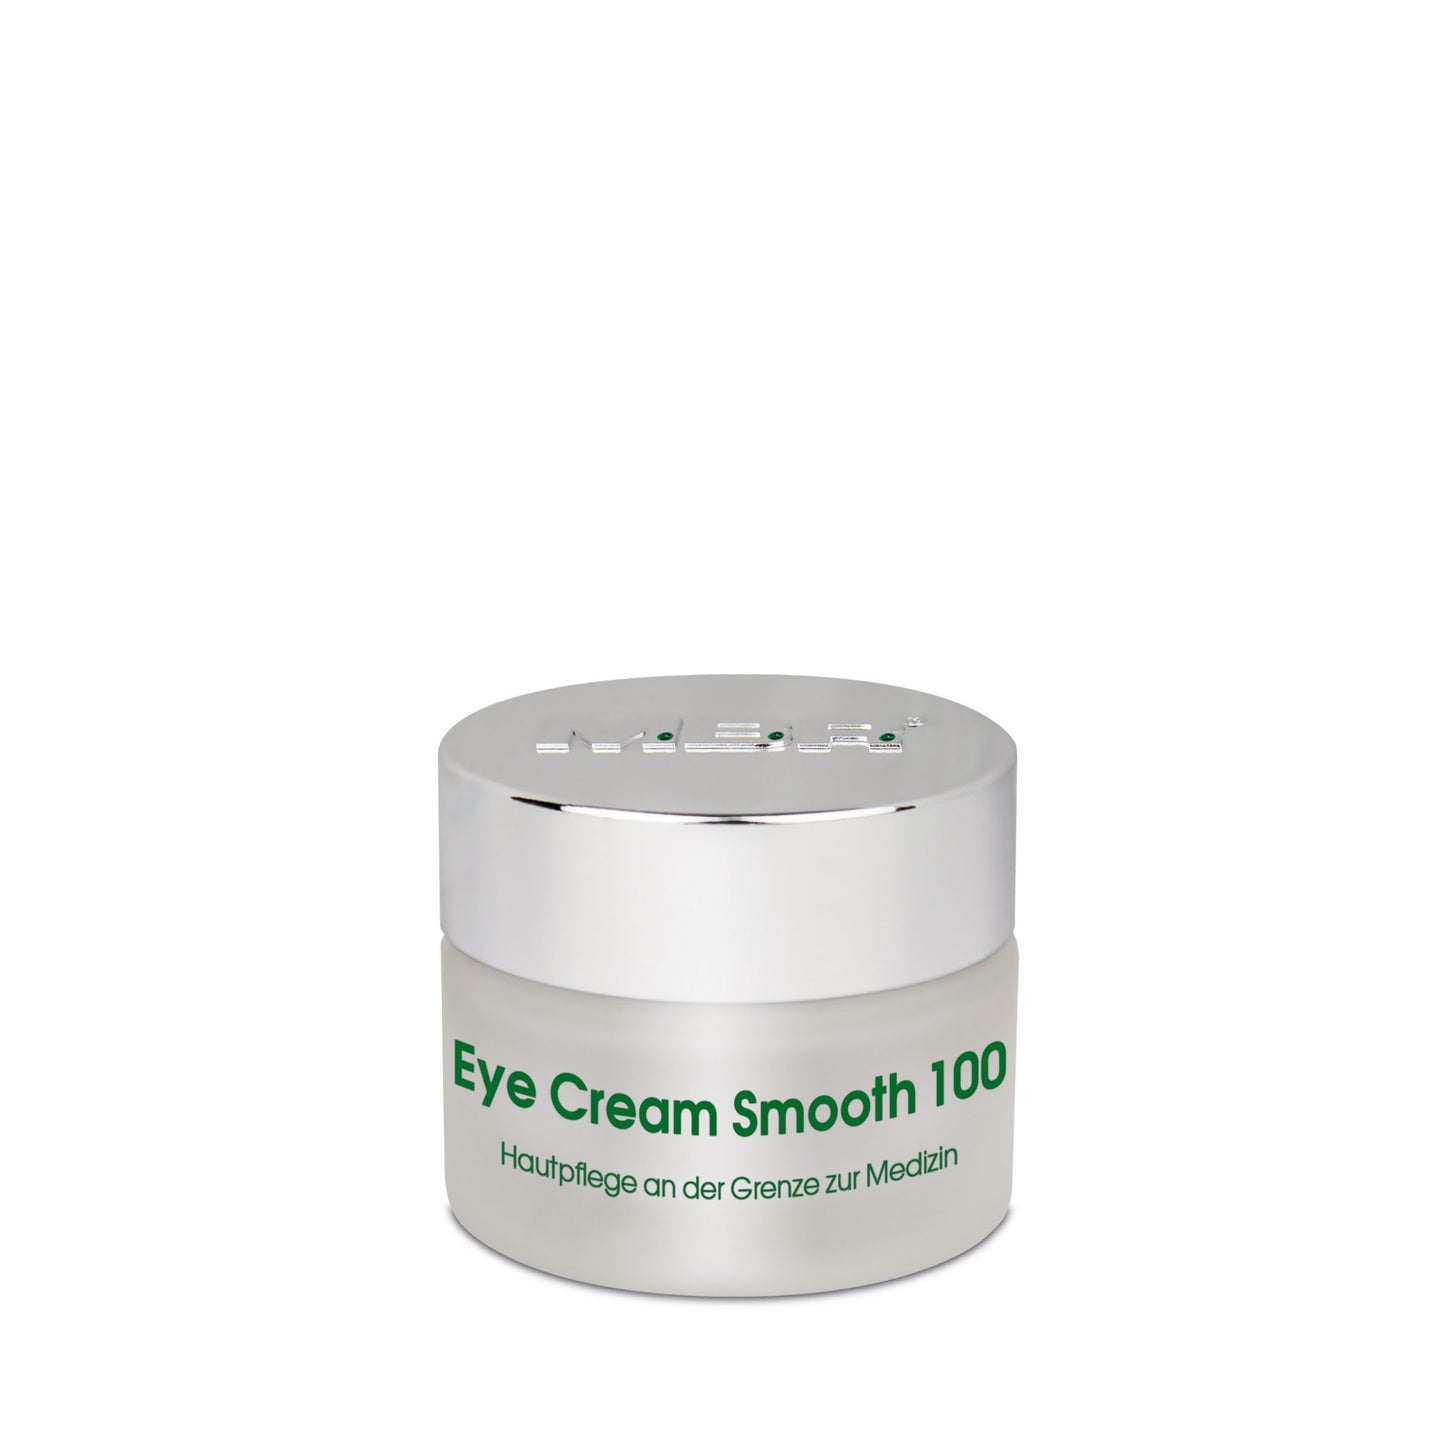 Eye Cream Smooth 100: Botox Effect Rejuvenating Eye Cream